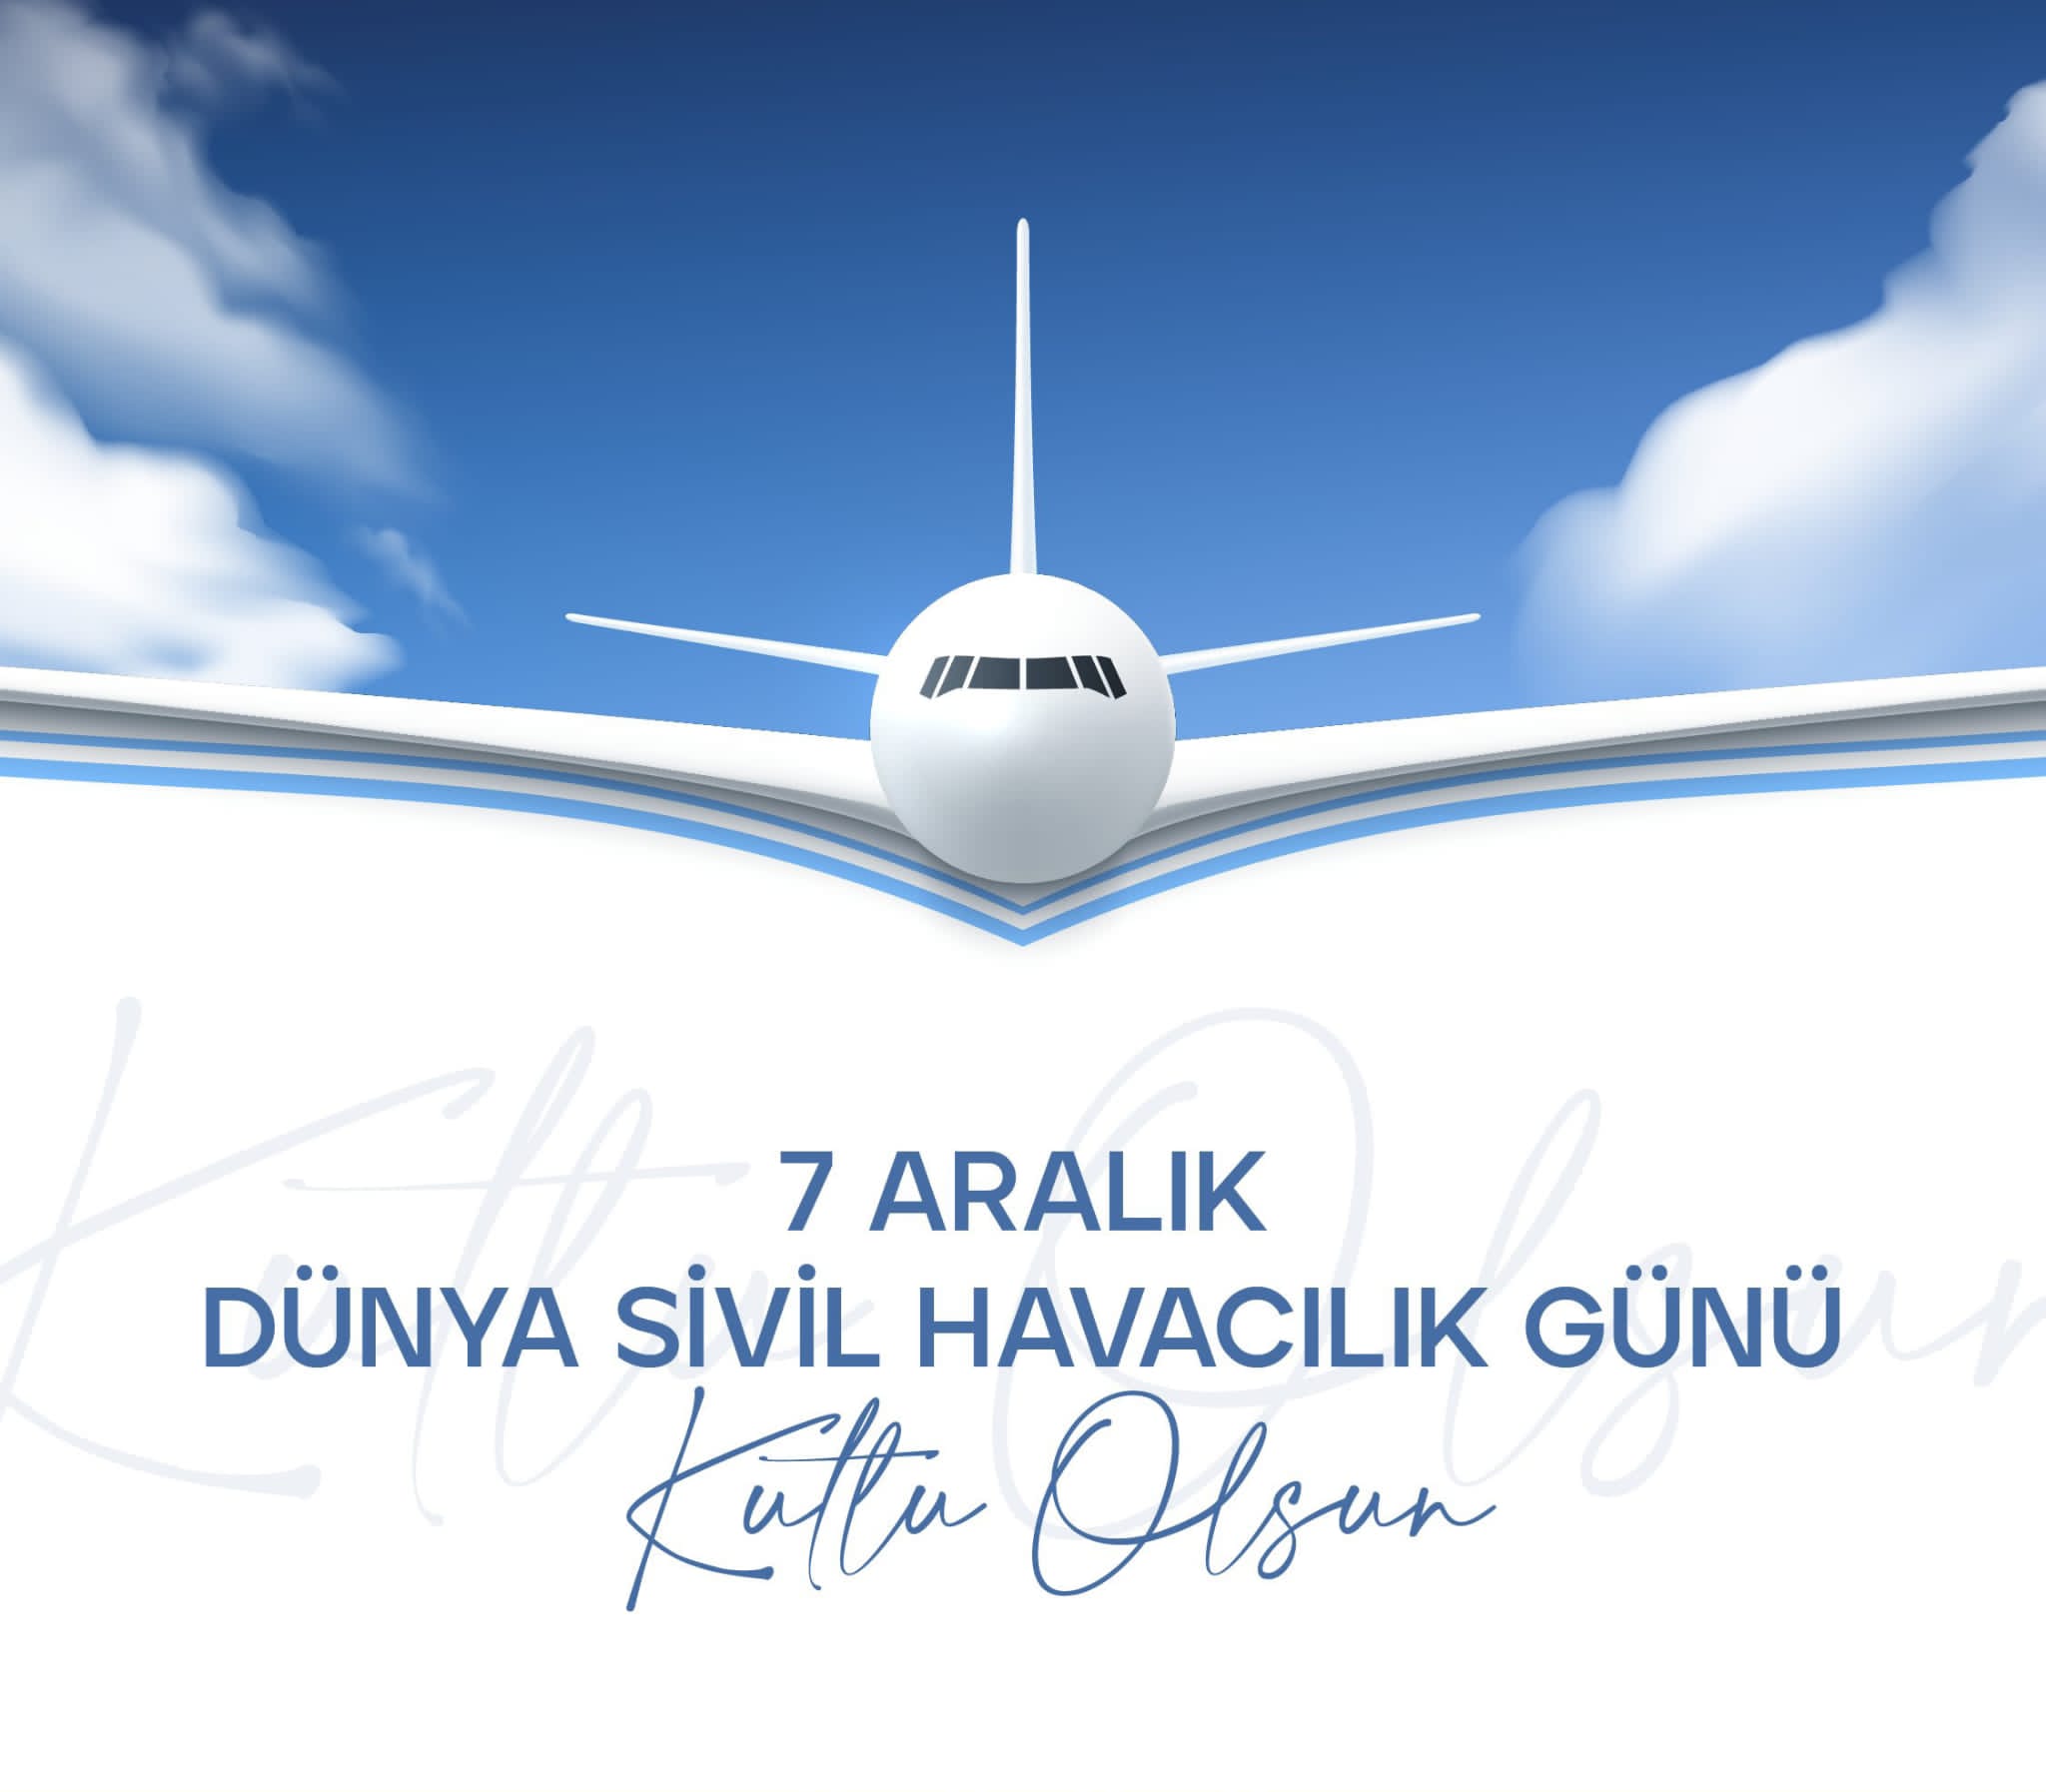 OGC Başkanı Nihat Aydın’dan 7 Aralık Dünya Sivil Havacılık Günü Mesajı